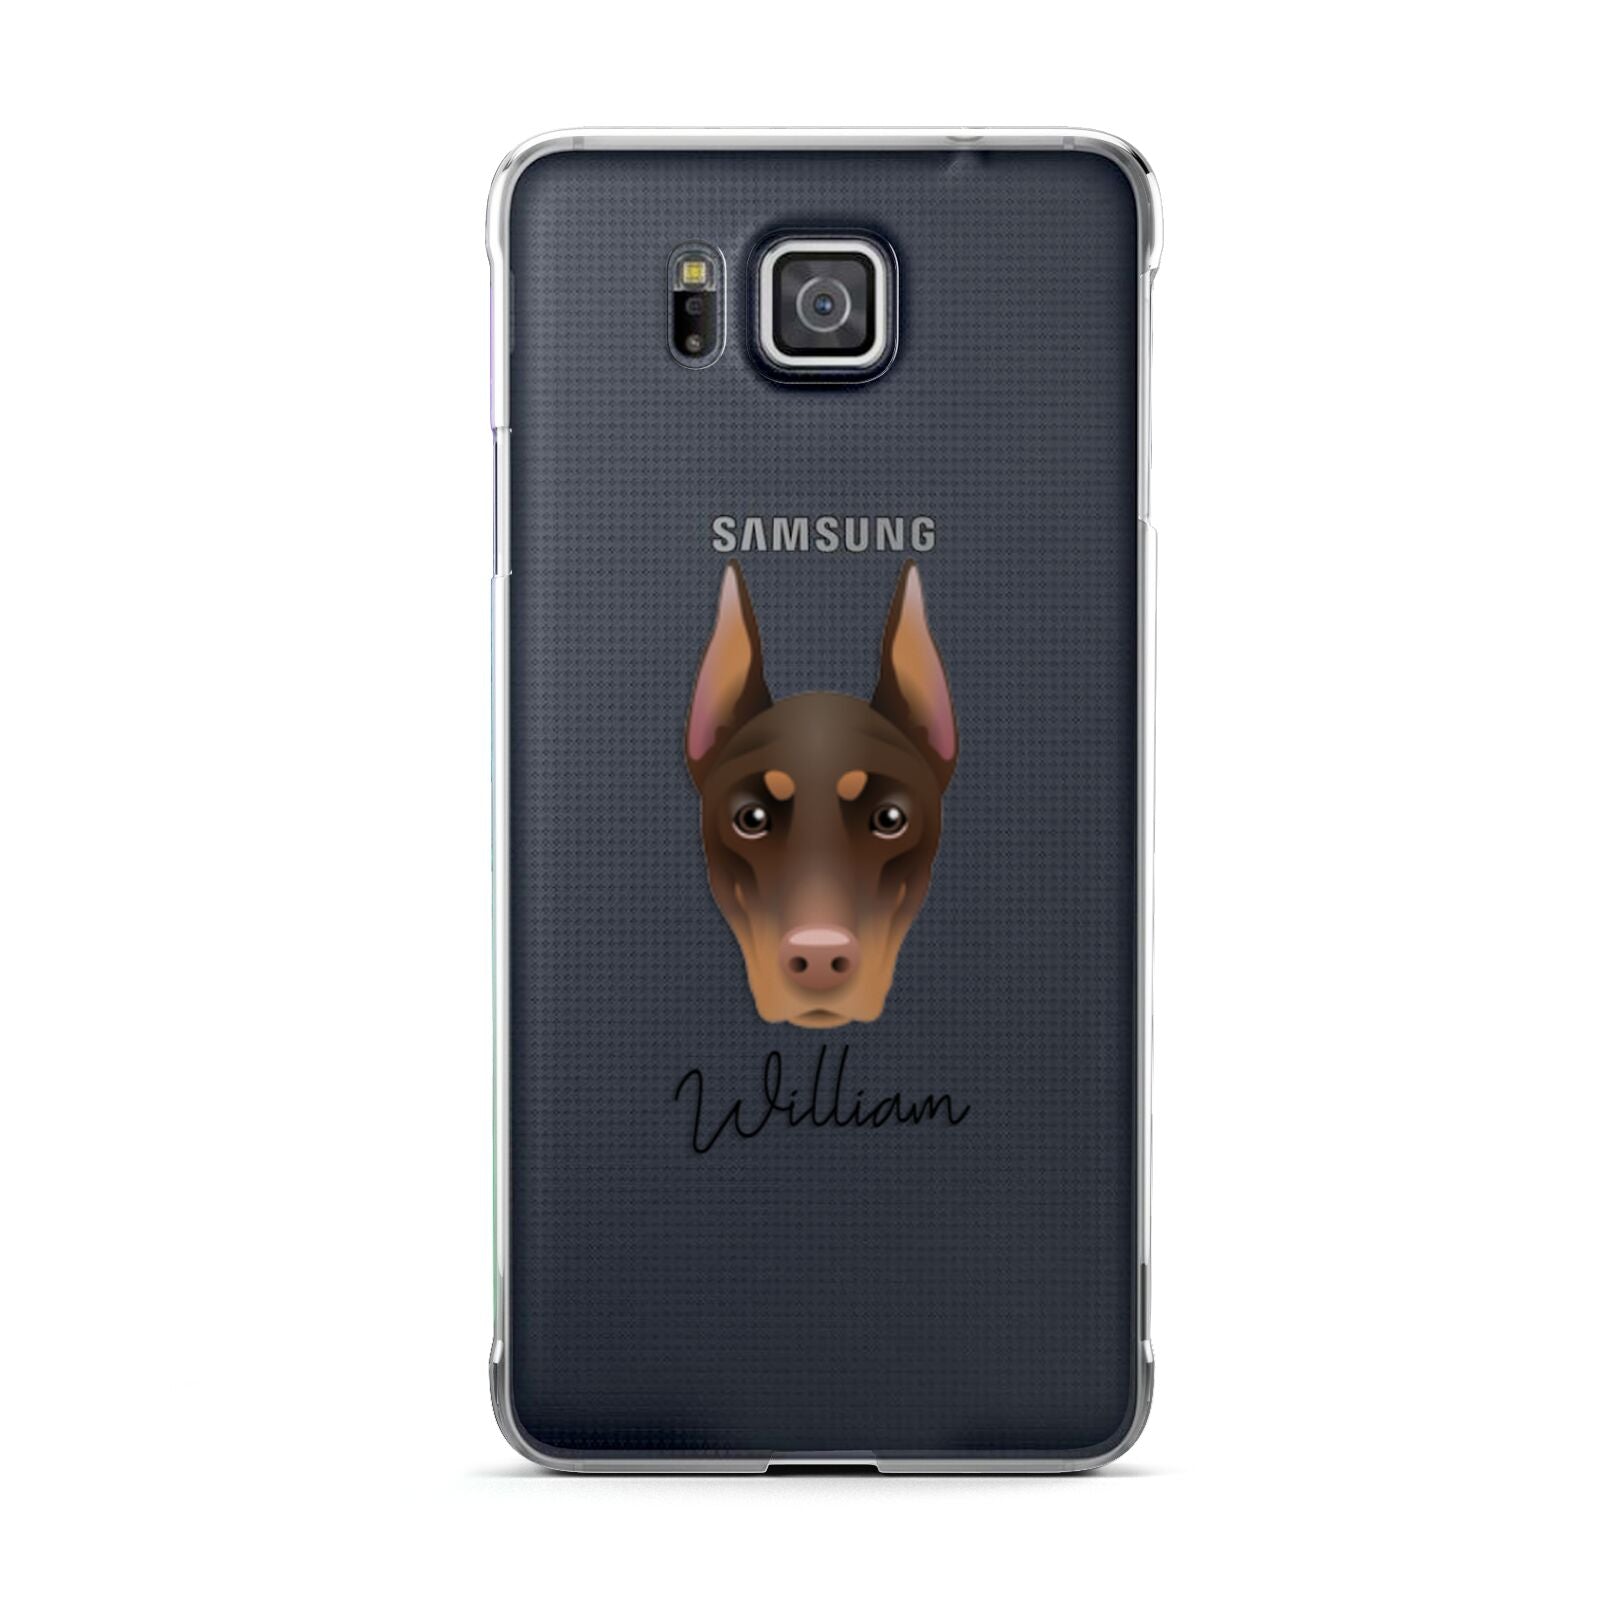 Dobermann Personalised Samsung Galaxy Alpha Case